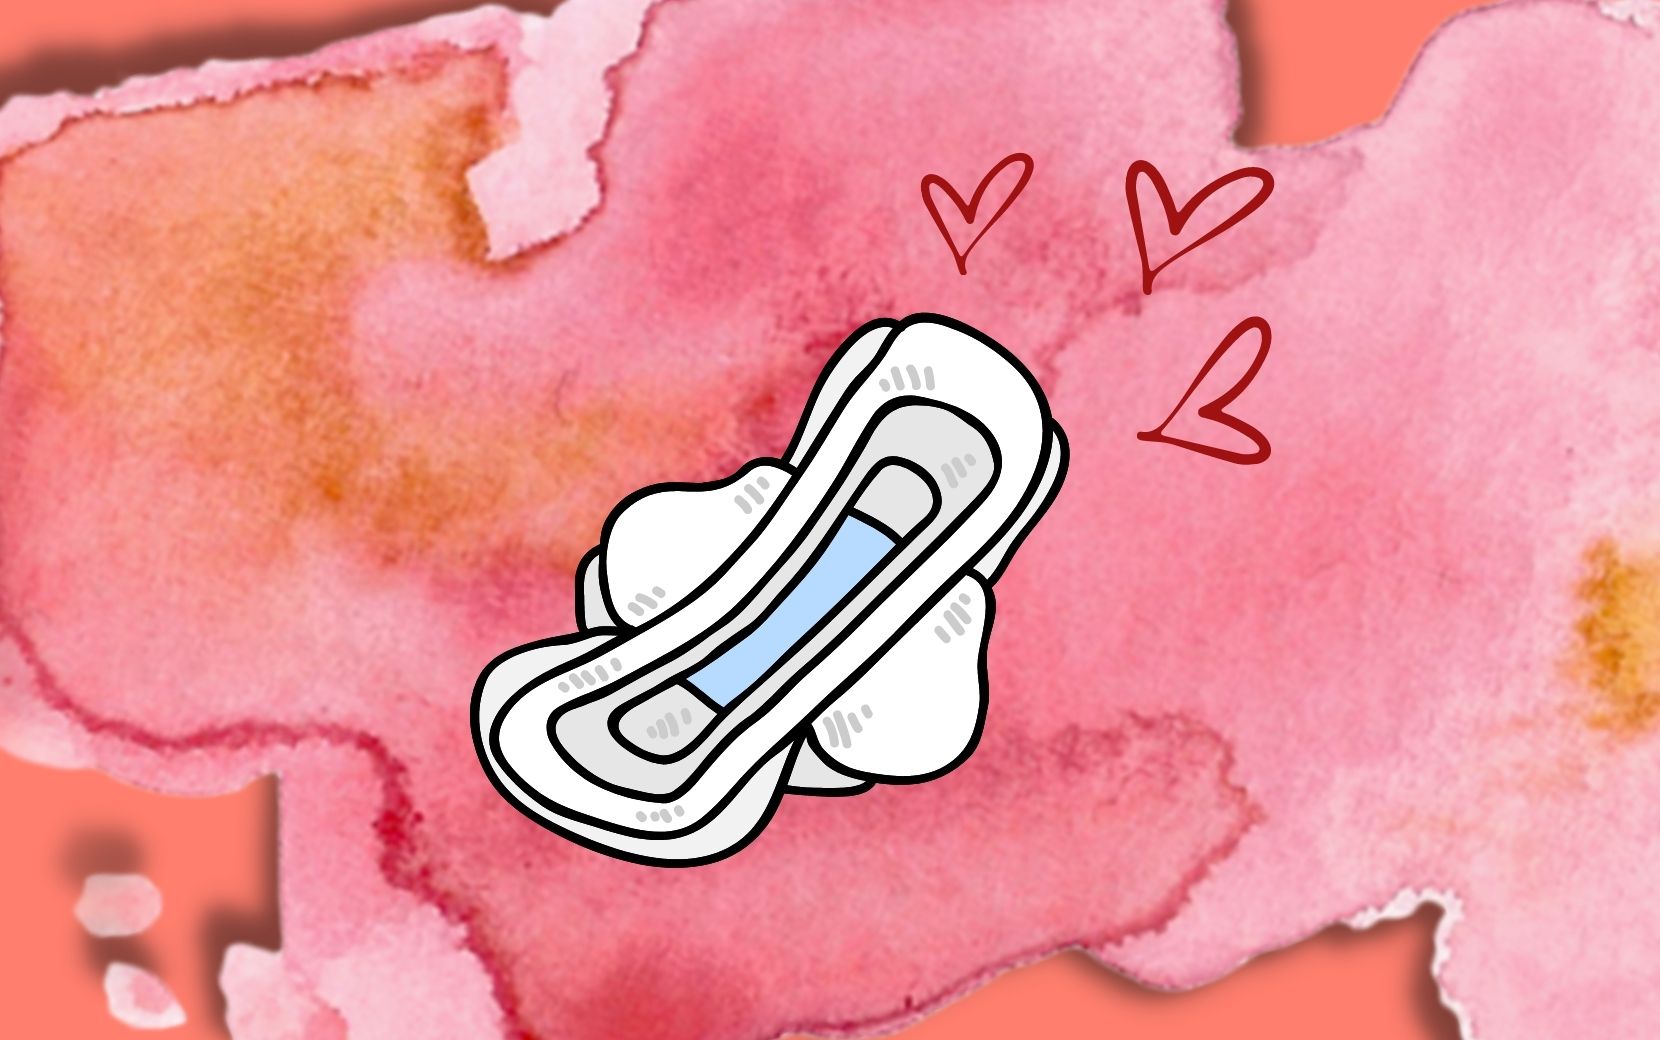 Sexo & Menstruação: tire suas dúvidas sobre transar menstruada